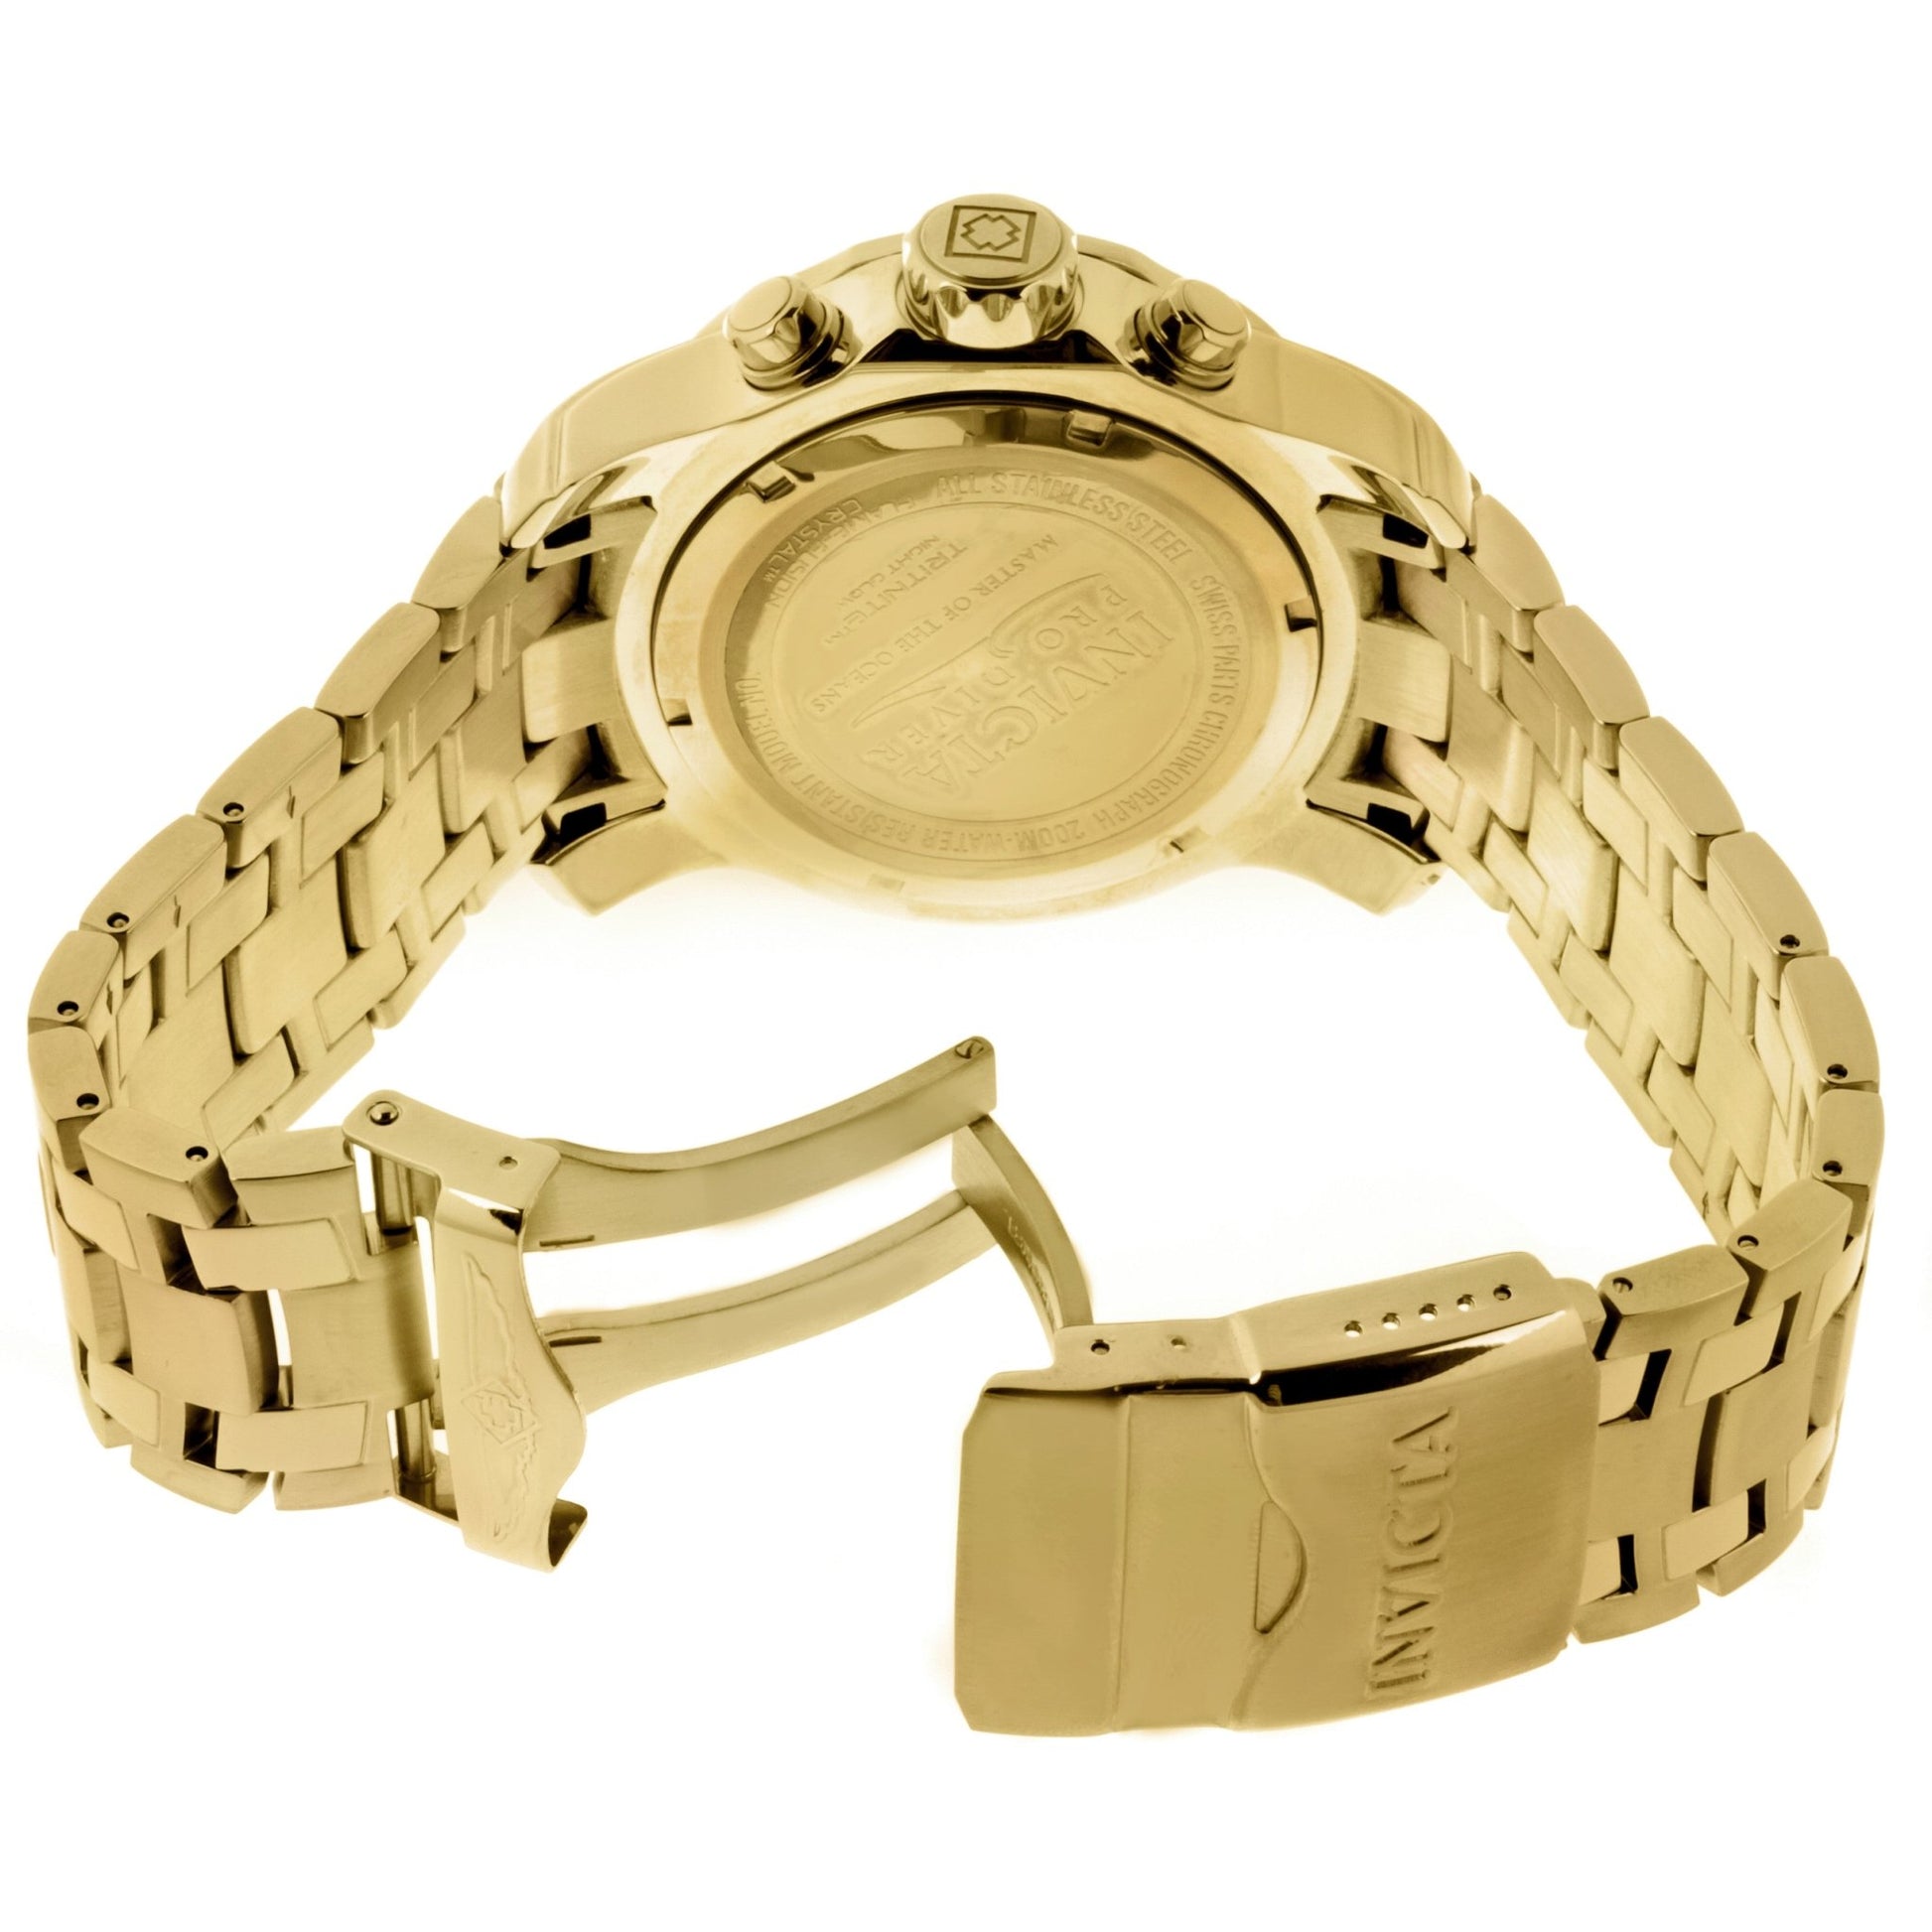 Invicta Pro Diver SCUBA 0074 Men's Quartz Watch with gold-tone bracelet